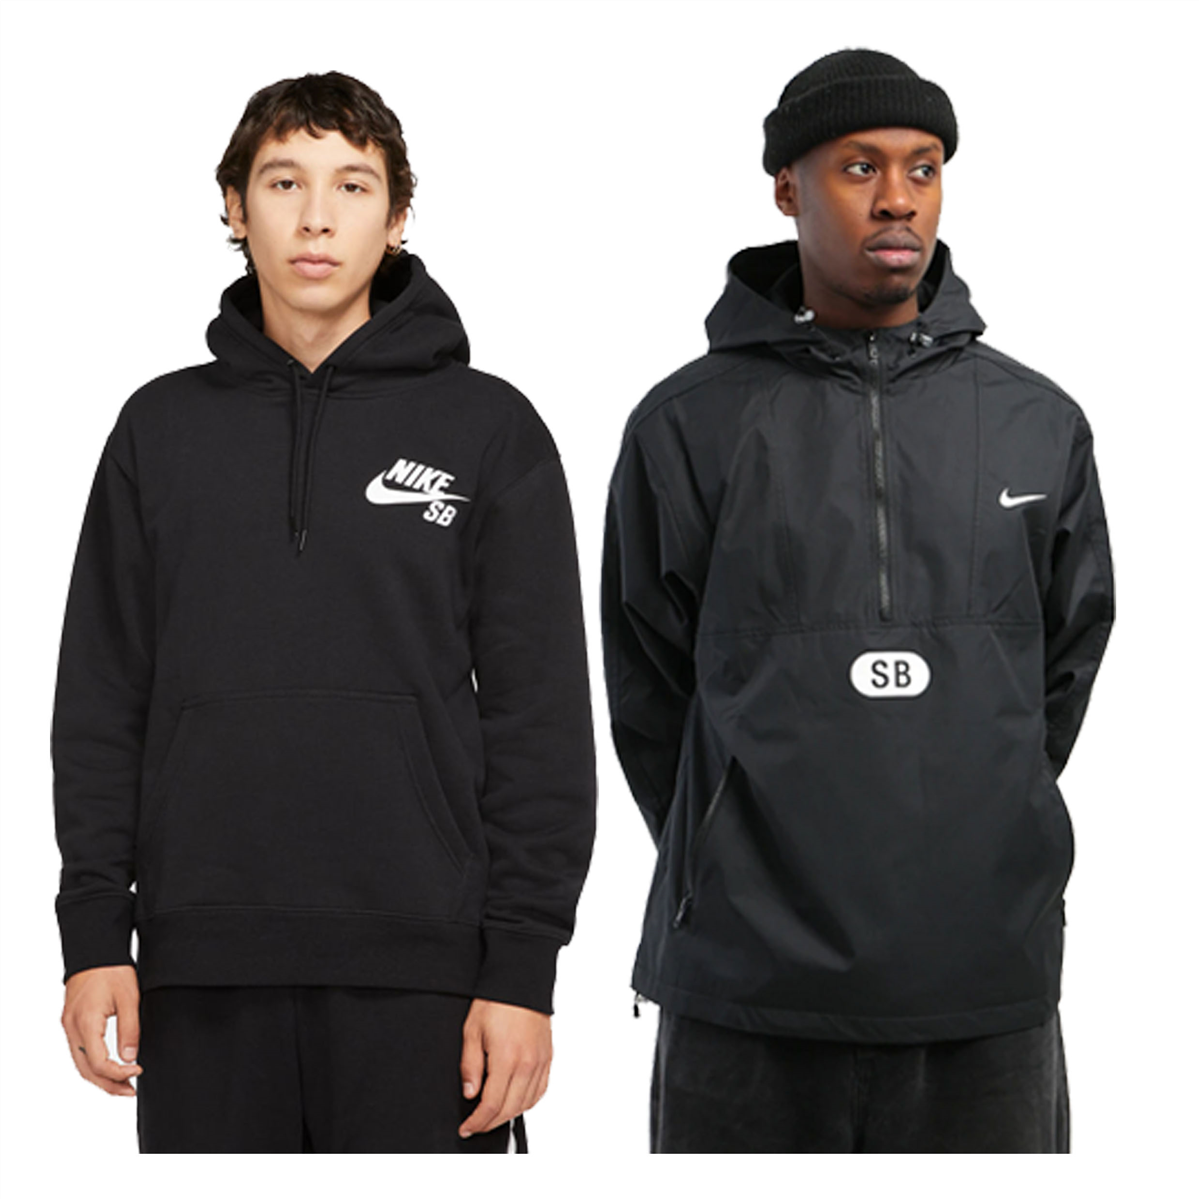 Nike Sb Essential Hood Black + Jacket Combo | Underground Skate